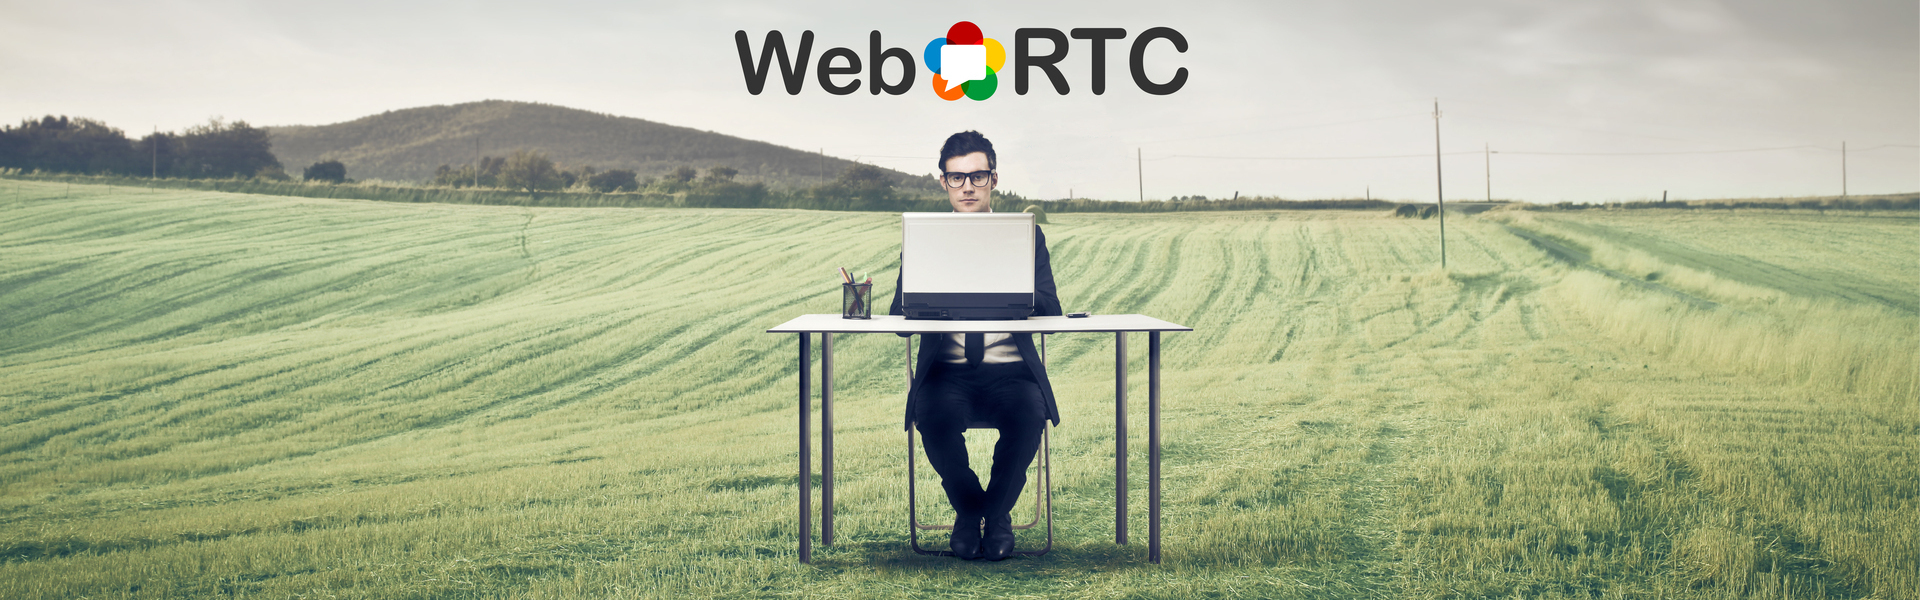 WebRTC marca blanca